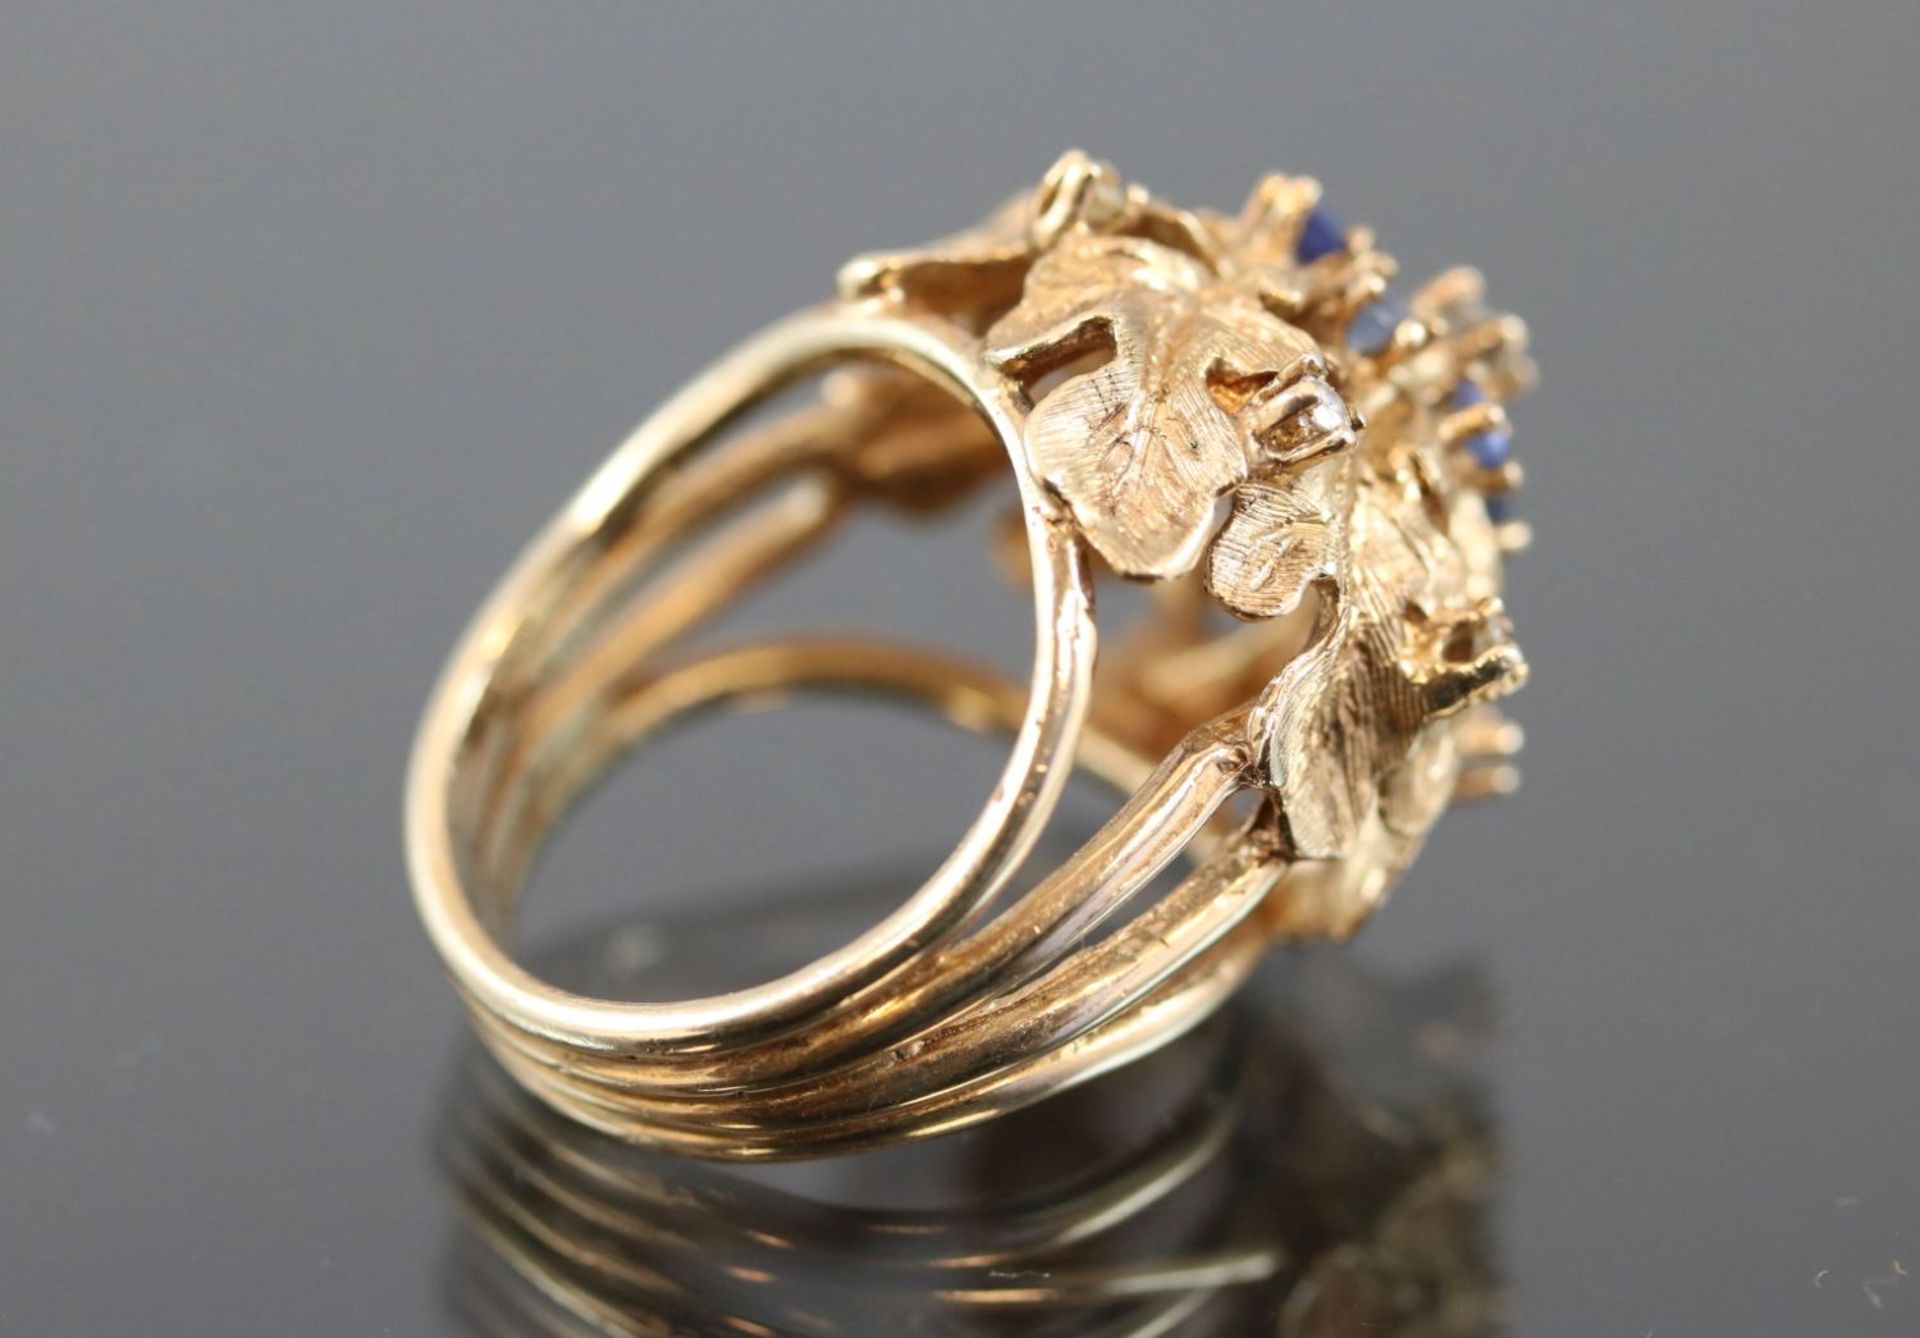 Saphir-Diamant-Ring, 585 Gelbgold10,9 Gramm 7 Diamanten, ca. 0,20 ct., w/si. Ringgröße: - Bild 7 aus 7